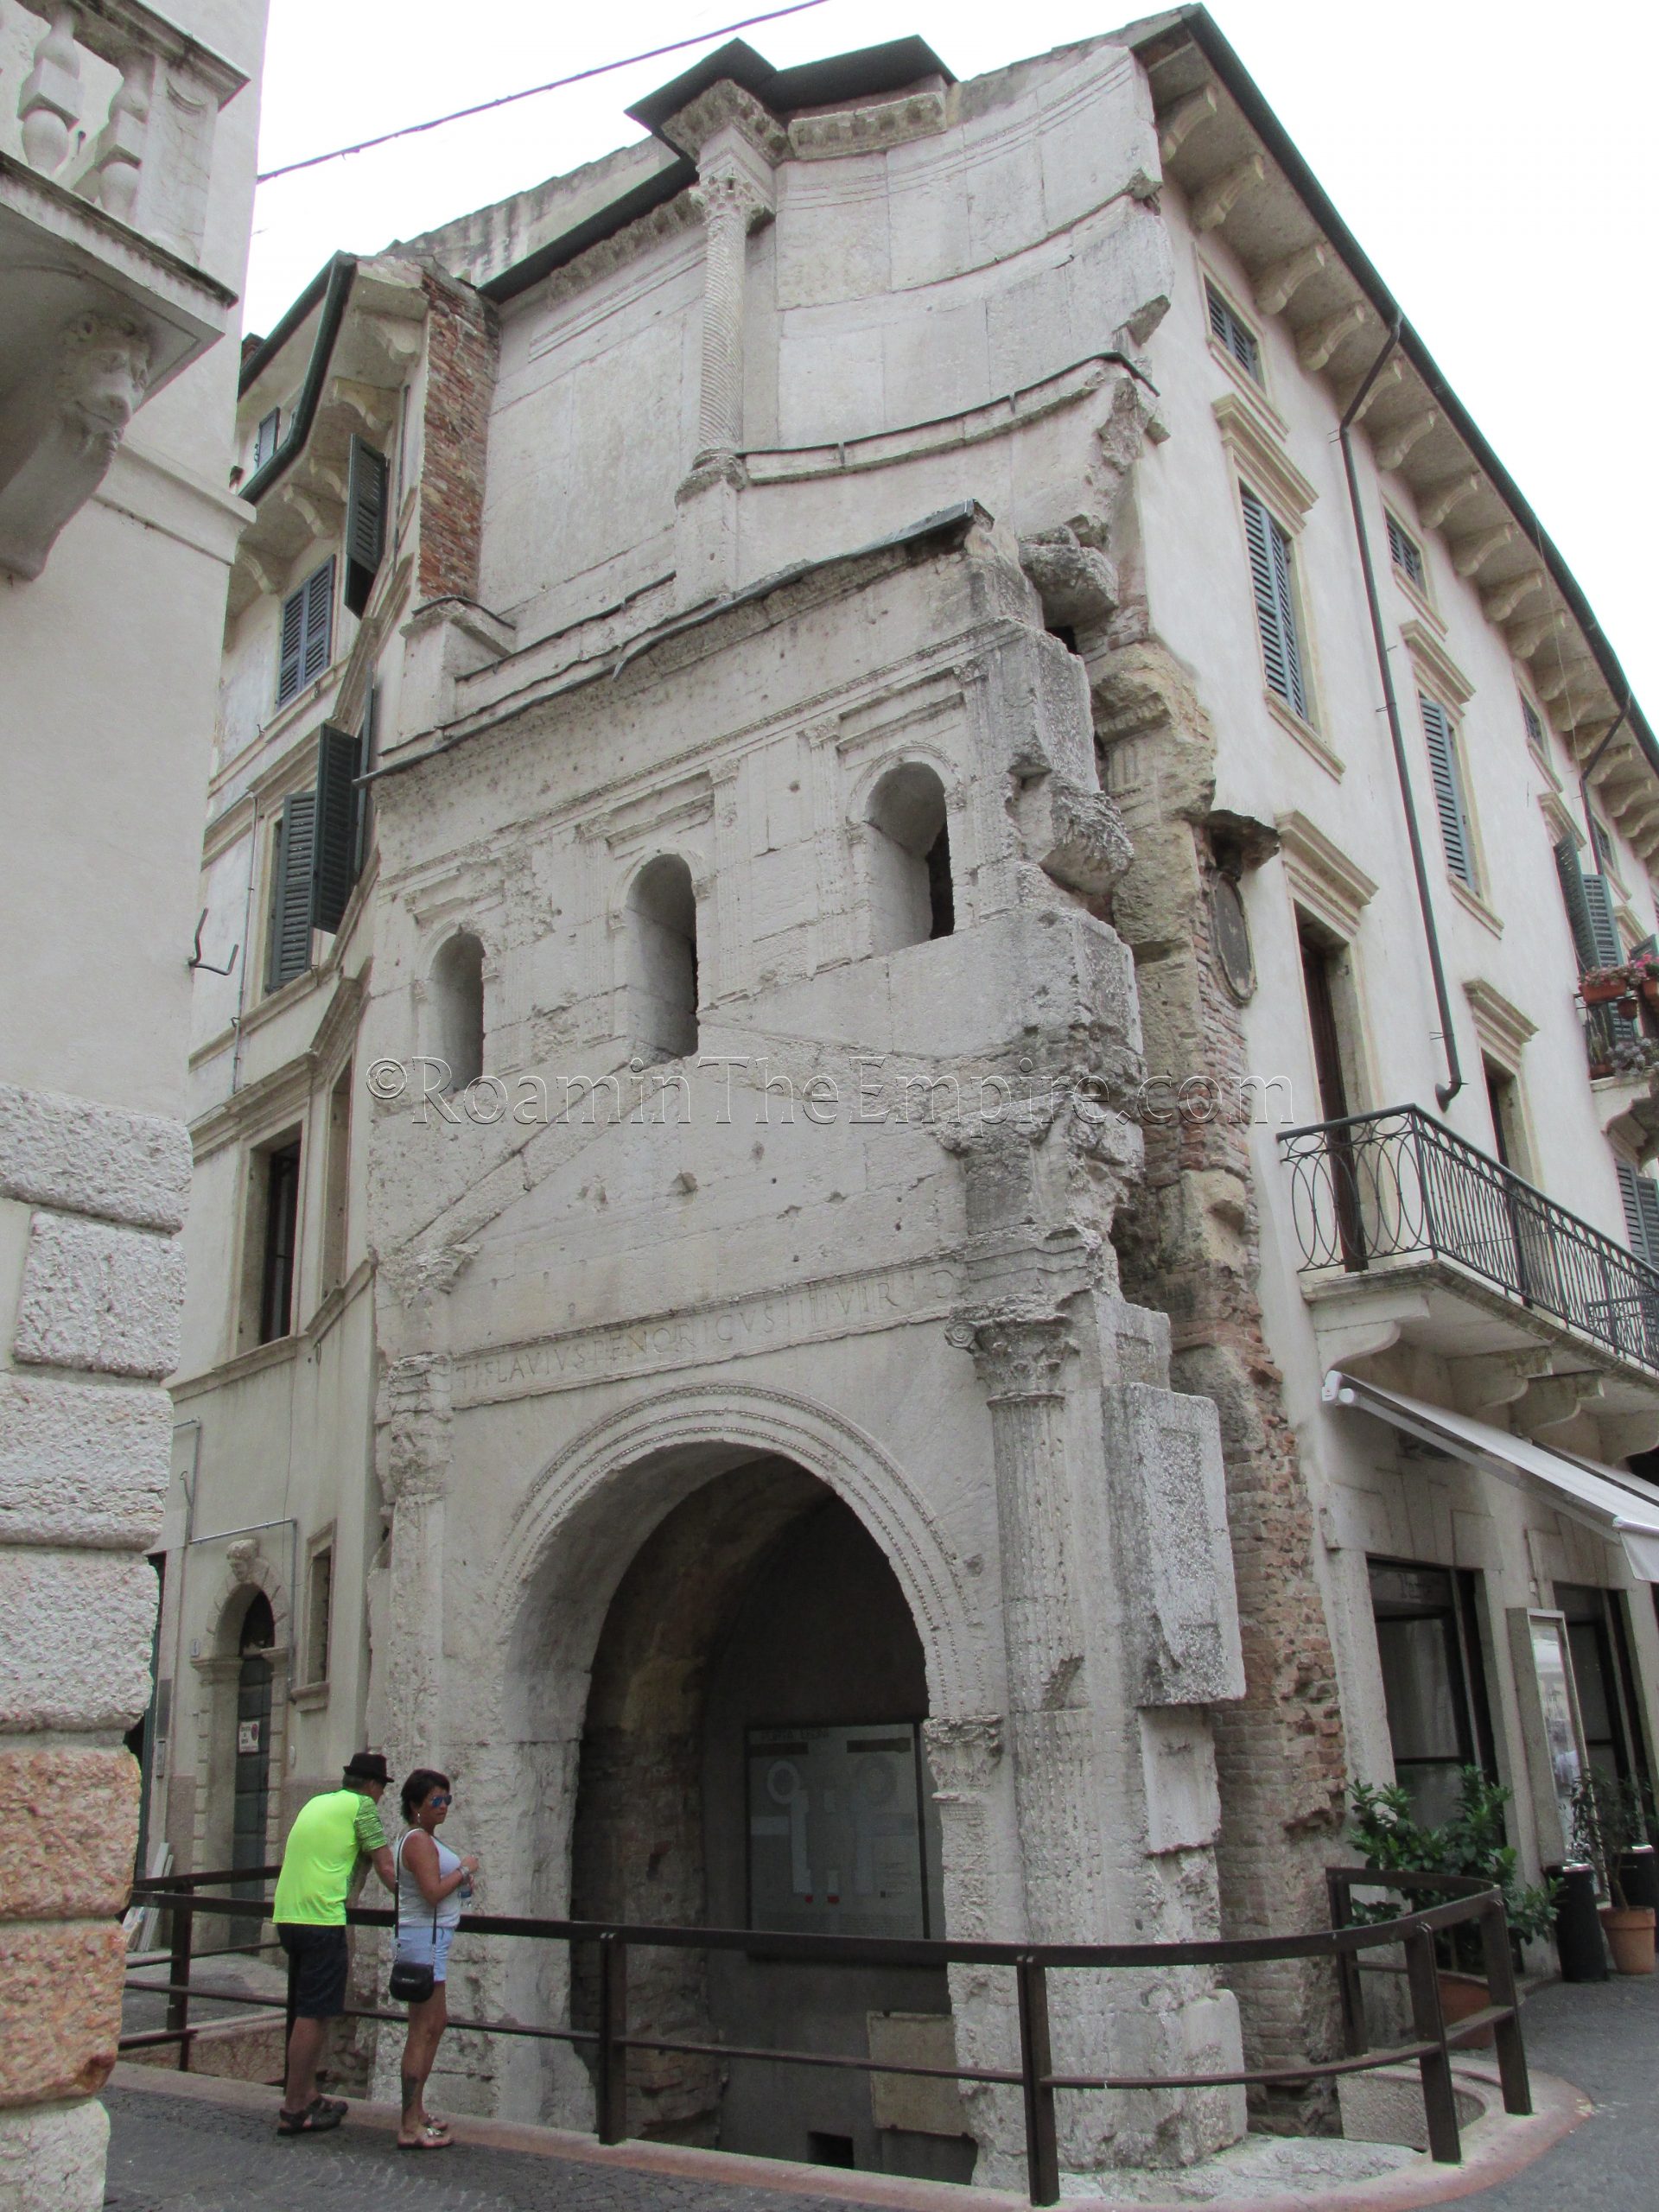 Interior imperial facade of the Porta Leoni. Verona.